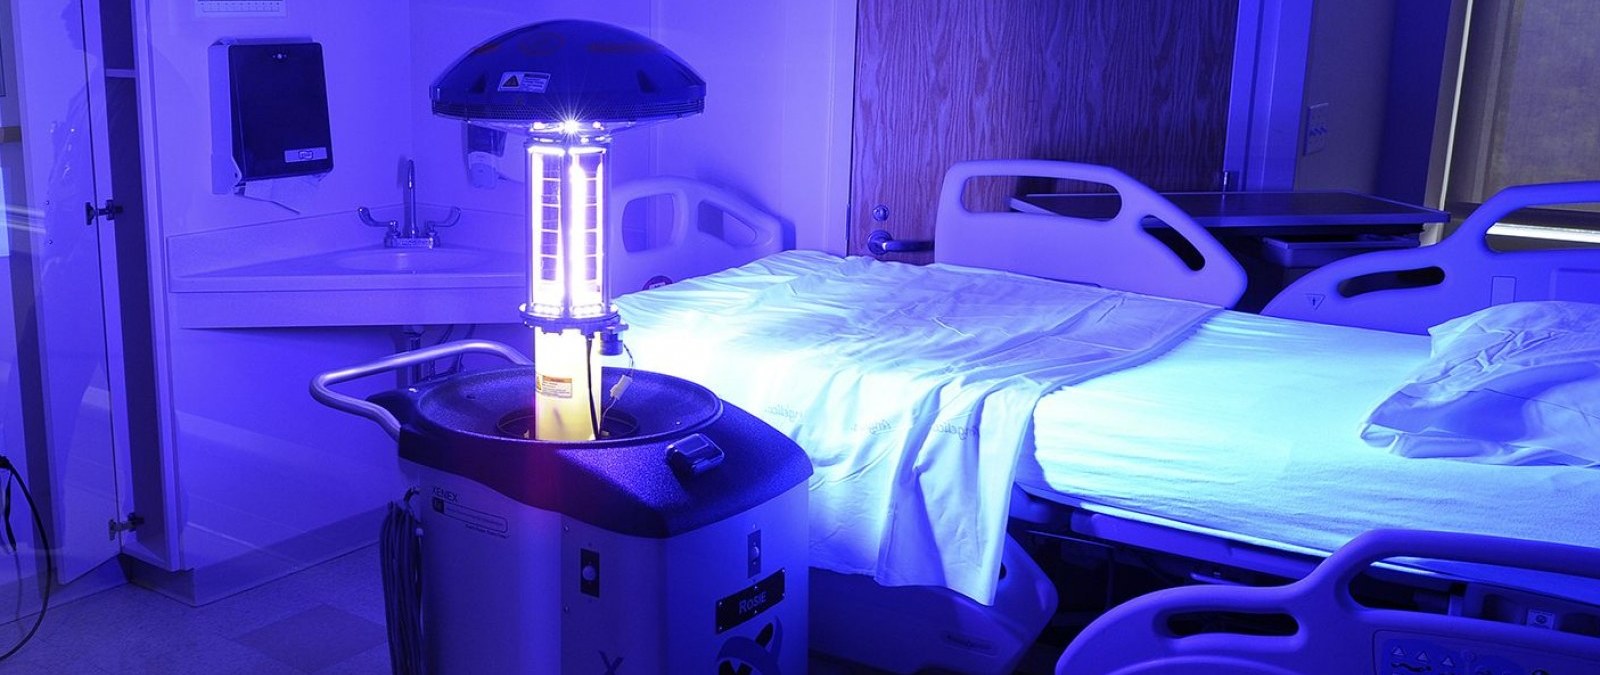 Qué sabemos sobre el uso de lámparas ultravioleta como método desinfectante  frente al coronavirus · Maldita.es - Periodismo para que no te la cuelen